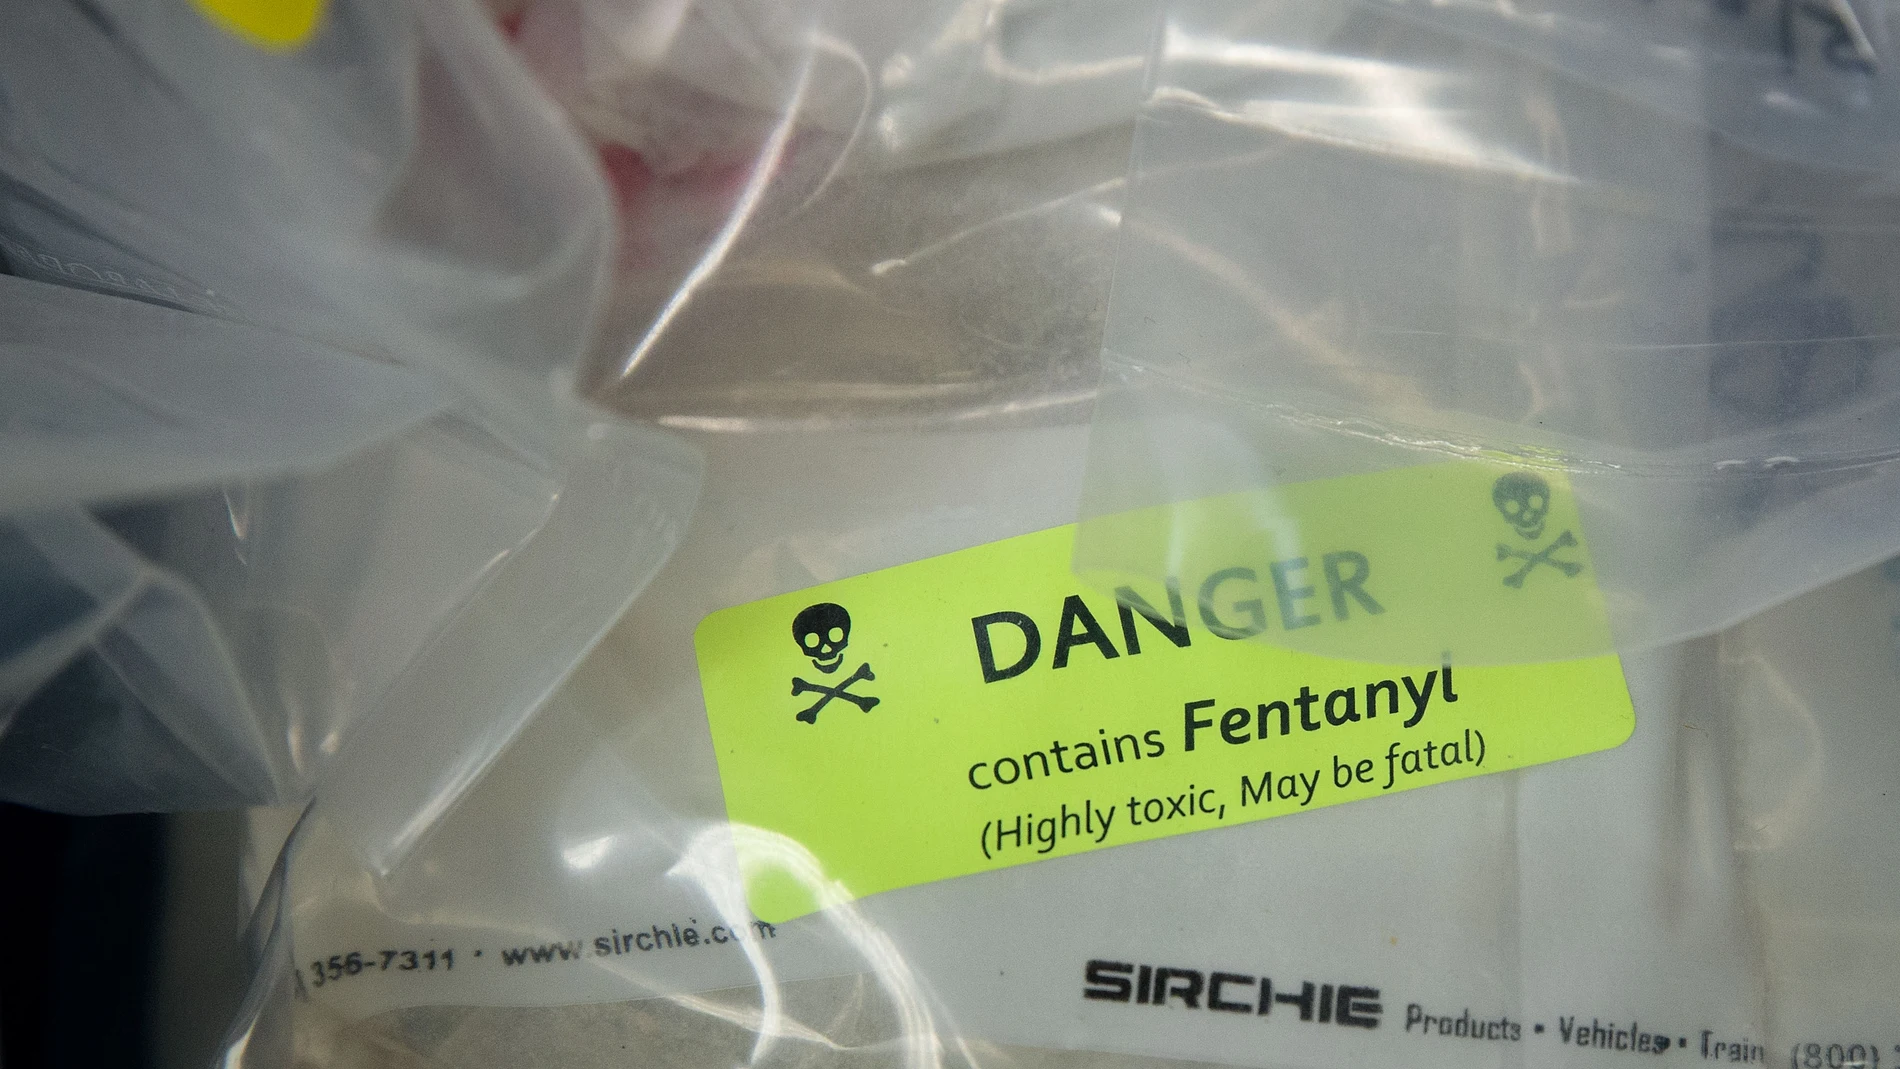 Un alijo de fentanilo, una droga 100 veces más potente que la heroína